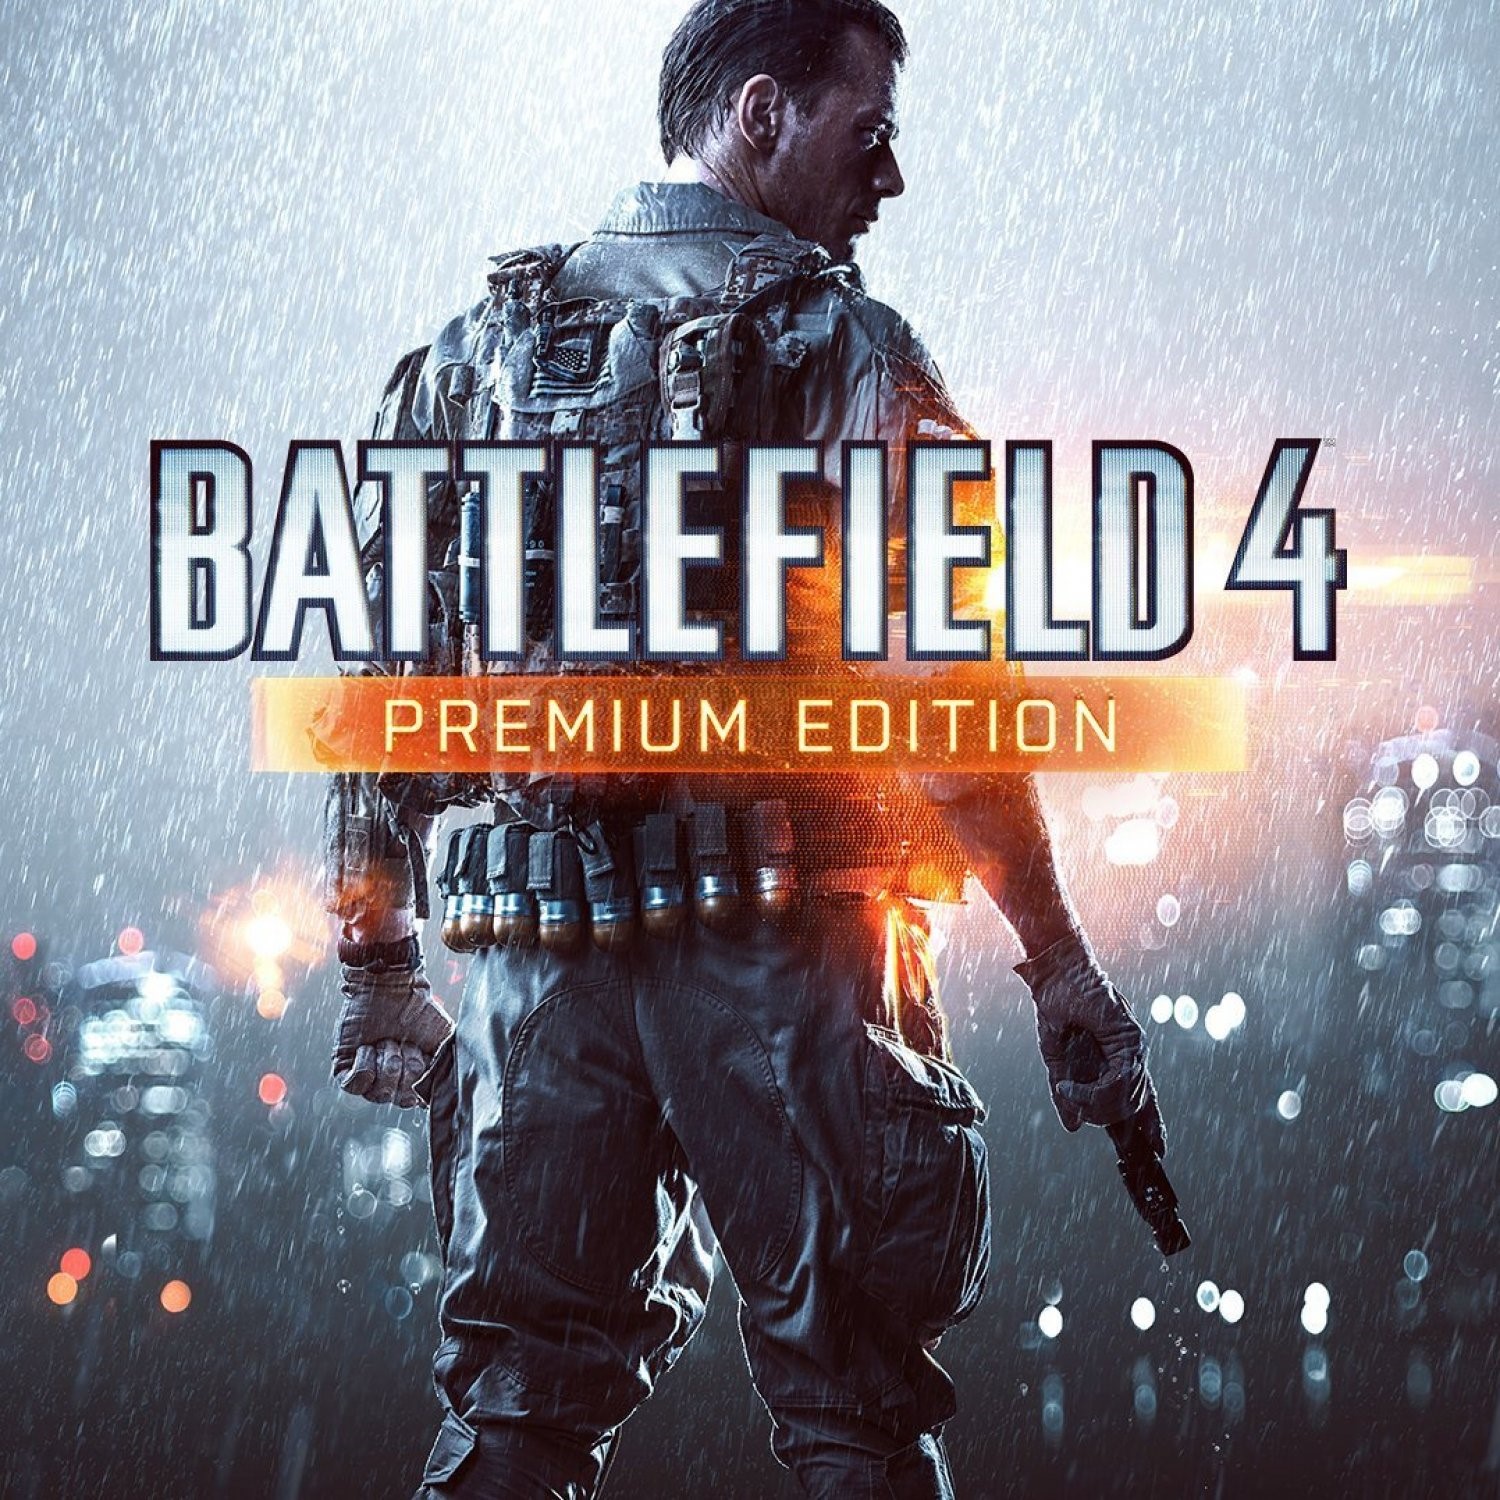 Ps4 premium. Battlefield 4™ Premium Edition. Диск для ps4 Battlefield 4 Premium Edition. Battlefield 4™ Premium Edition Xbox. Battlefield 4 Premium Edition PC.